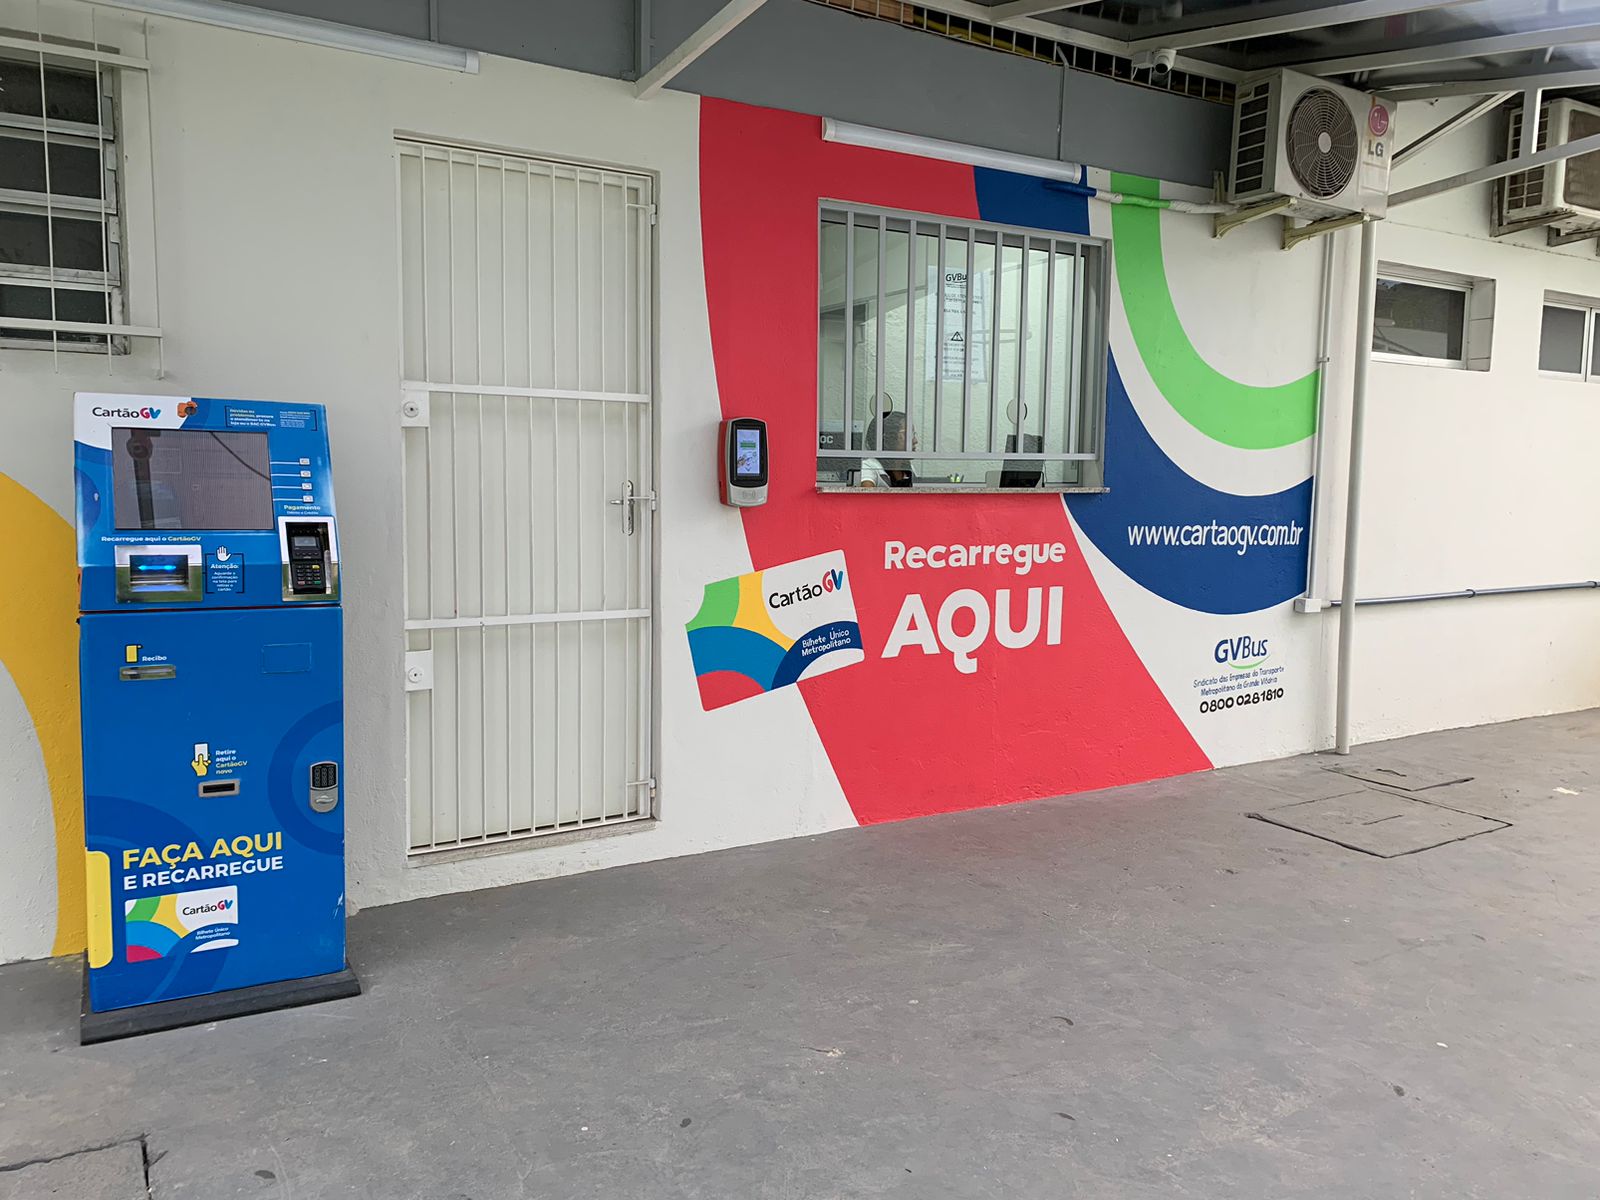 Nova loja fica no campus da Ufes, e vai beneficiar estudantes e moradores da região. Uma ATM ainda foi instalada para recarga do CartãoGV.